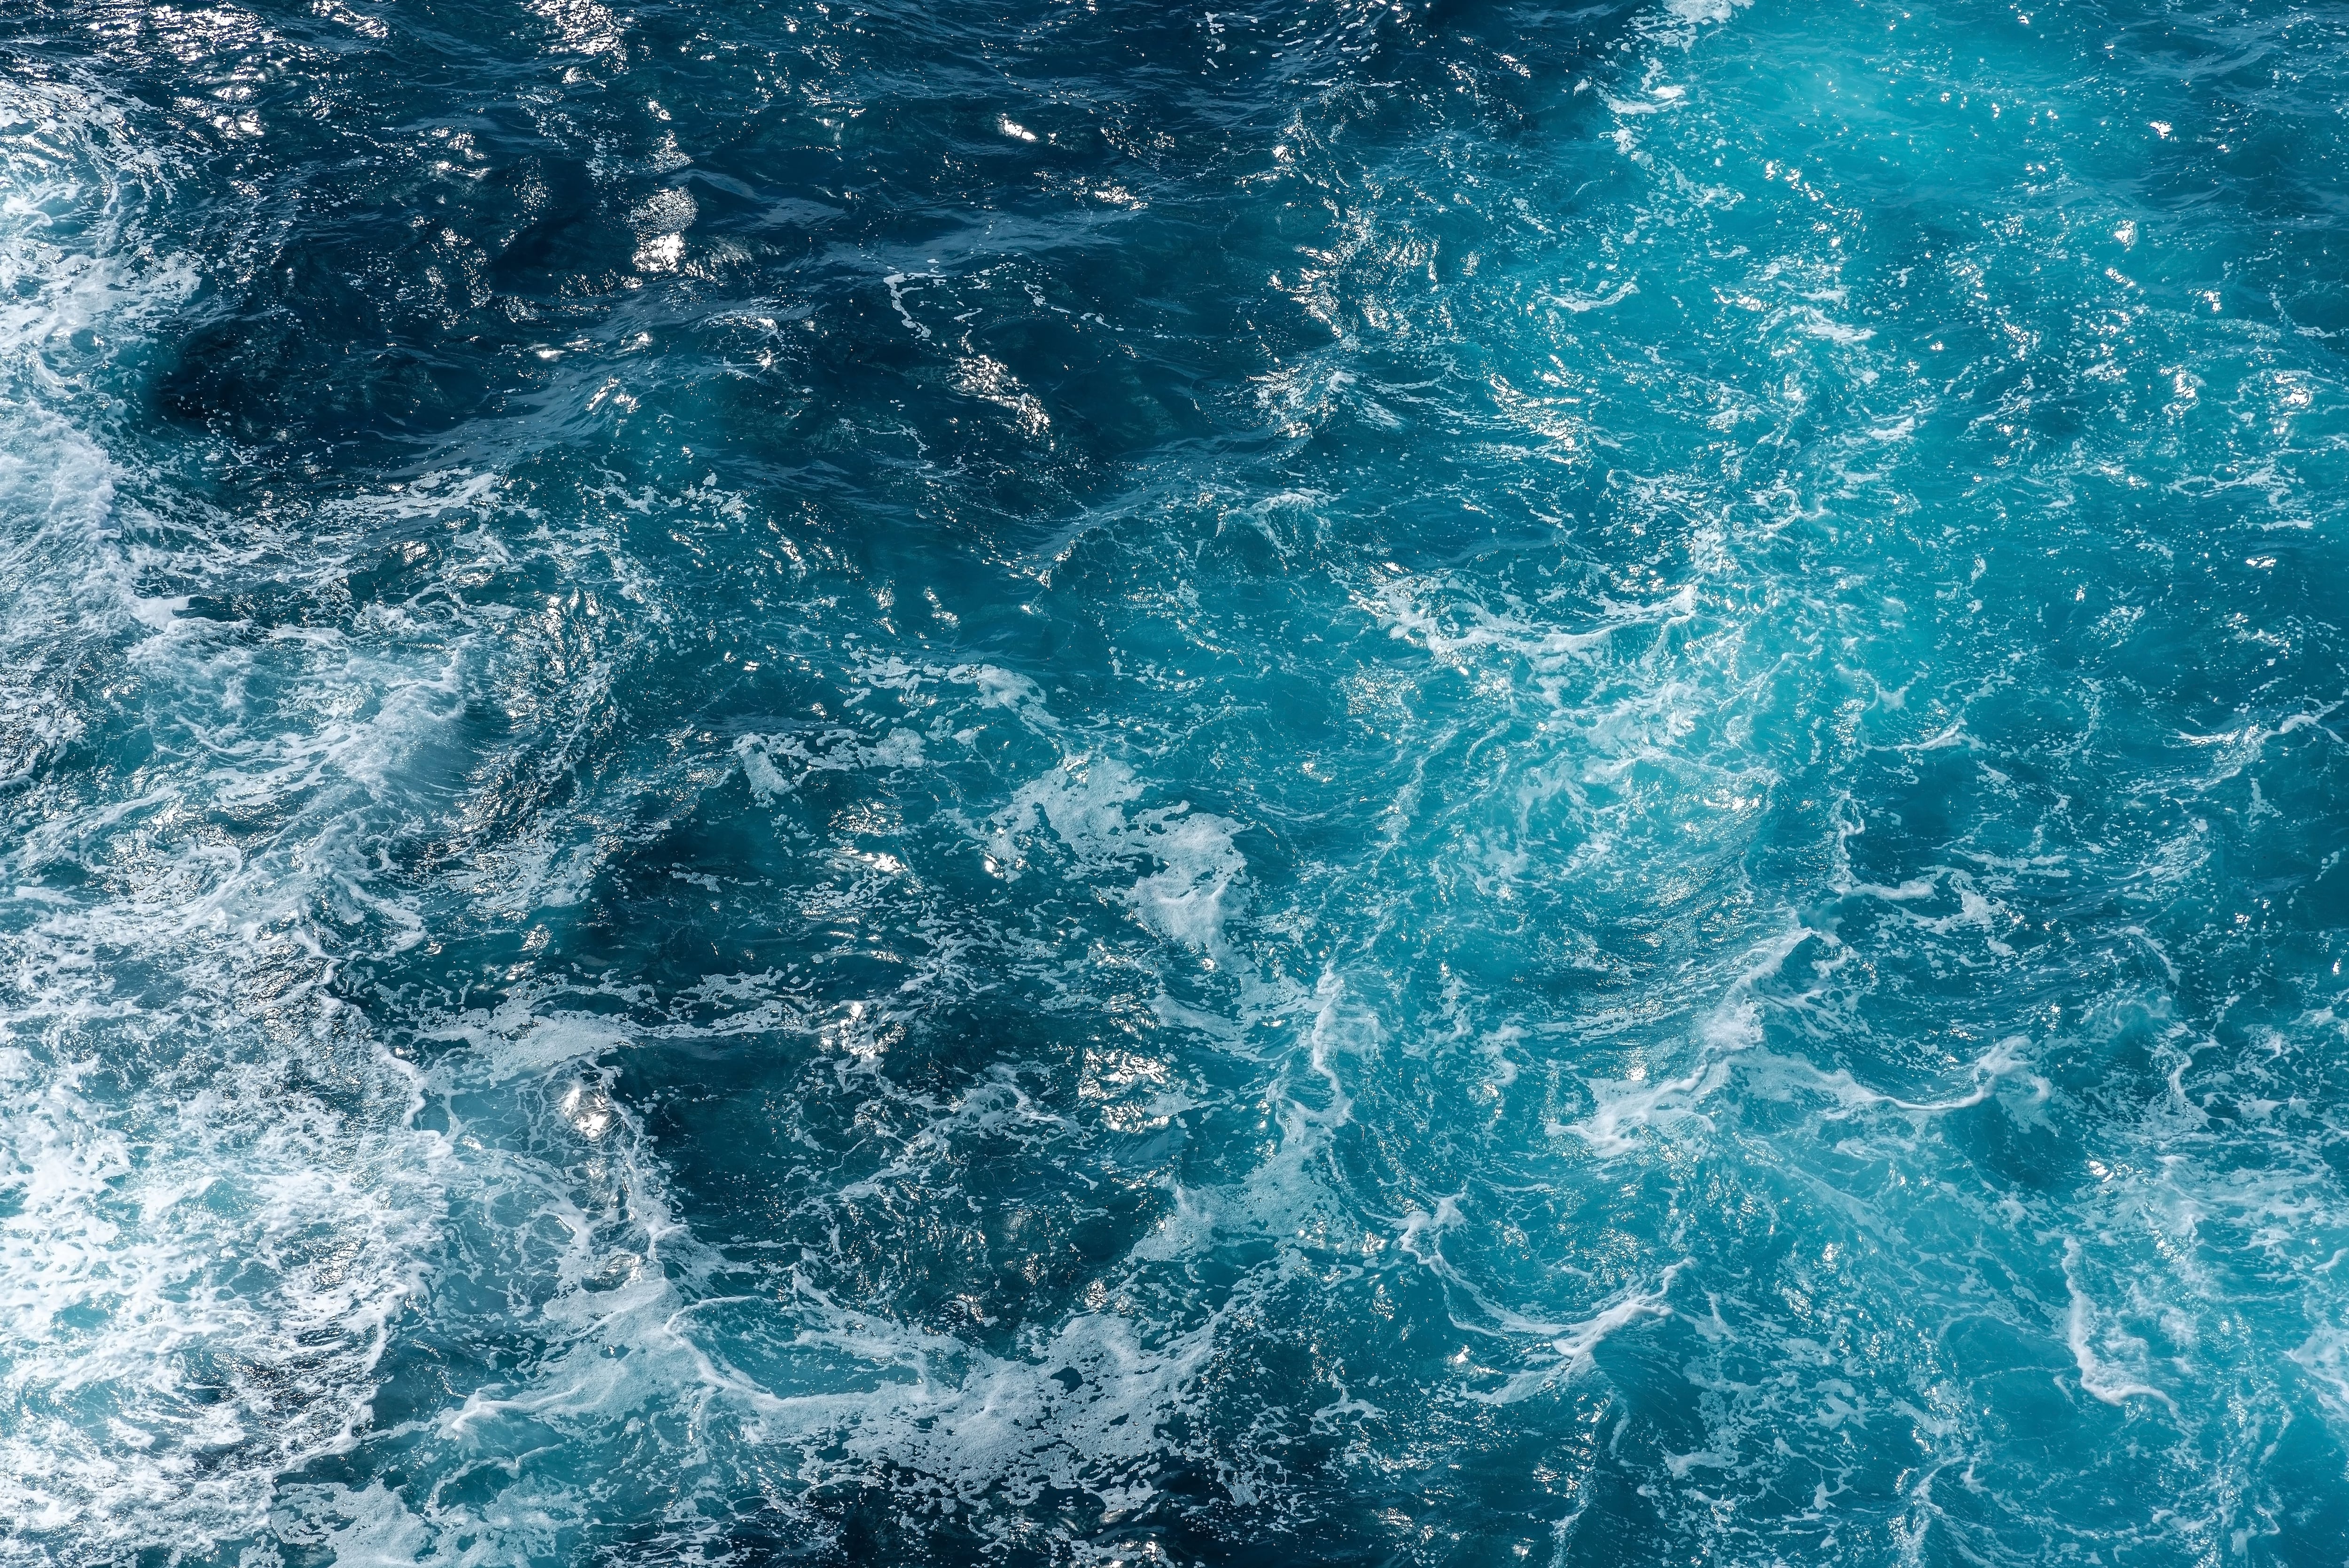 Cuando aumenta la temperatura del planeta se modifica las circulaciones oceánicas superficiales, provocando que sean más rápidas y delgadas
(Getty Images)